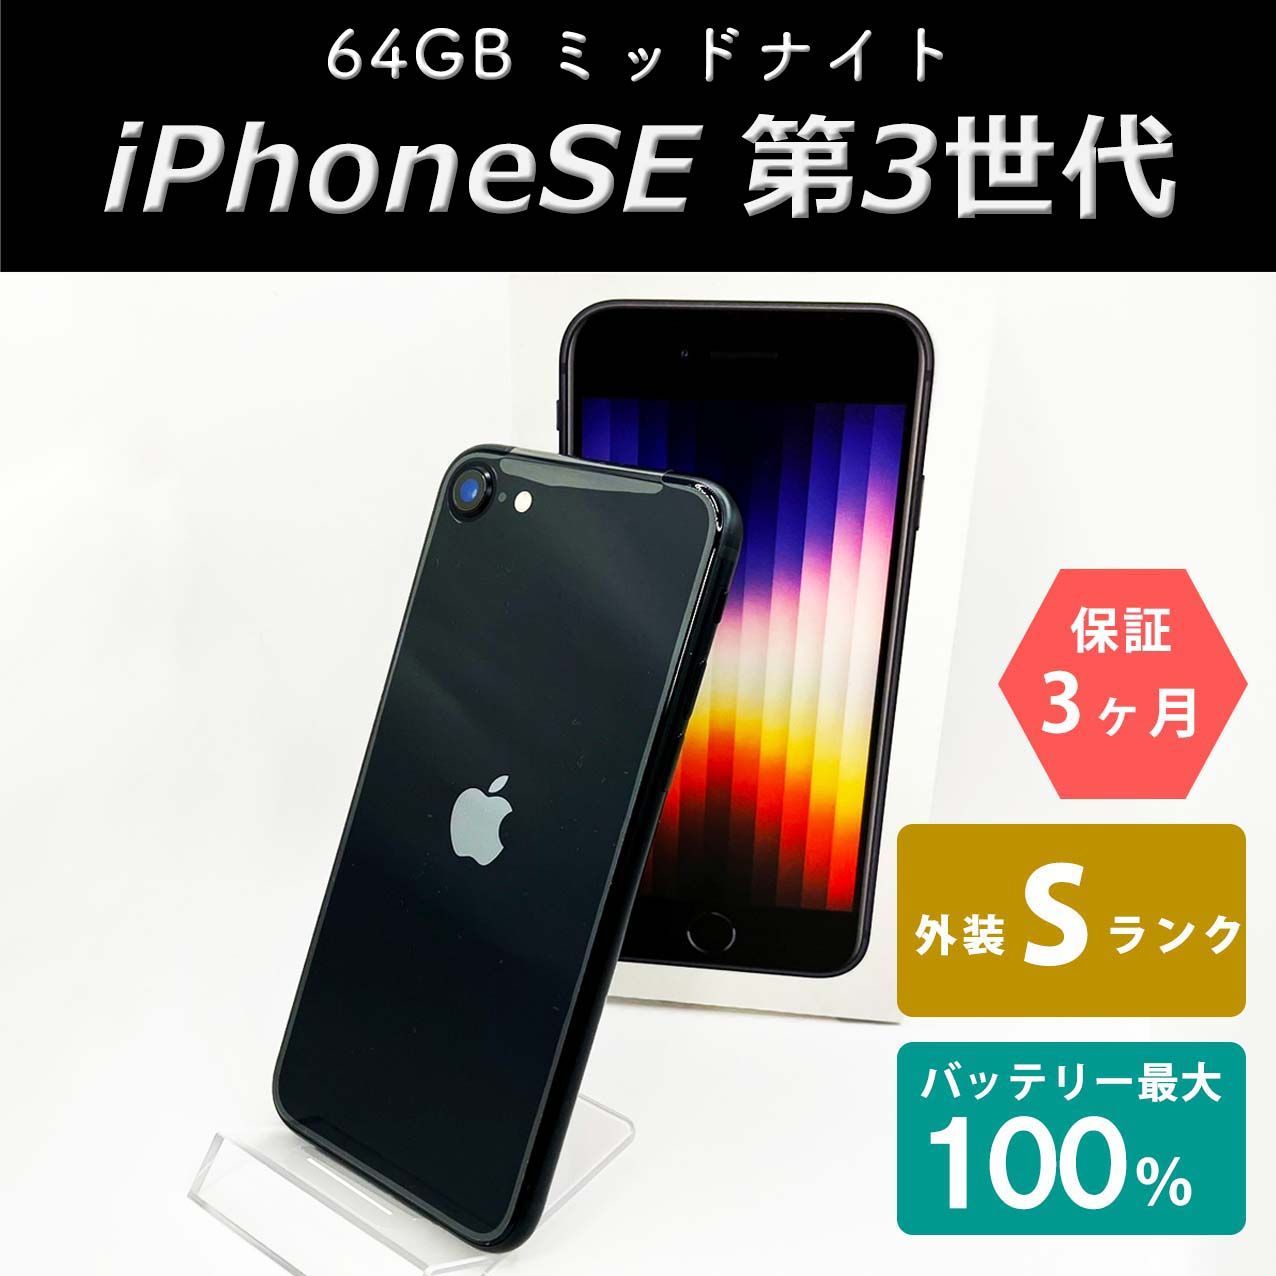 アップル iPhoneSE 第3世代 64GB ミッドナイト 未使用品